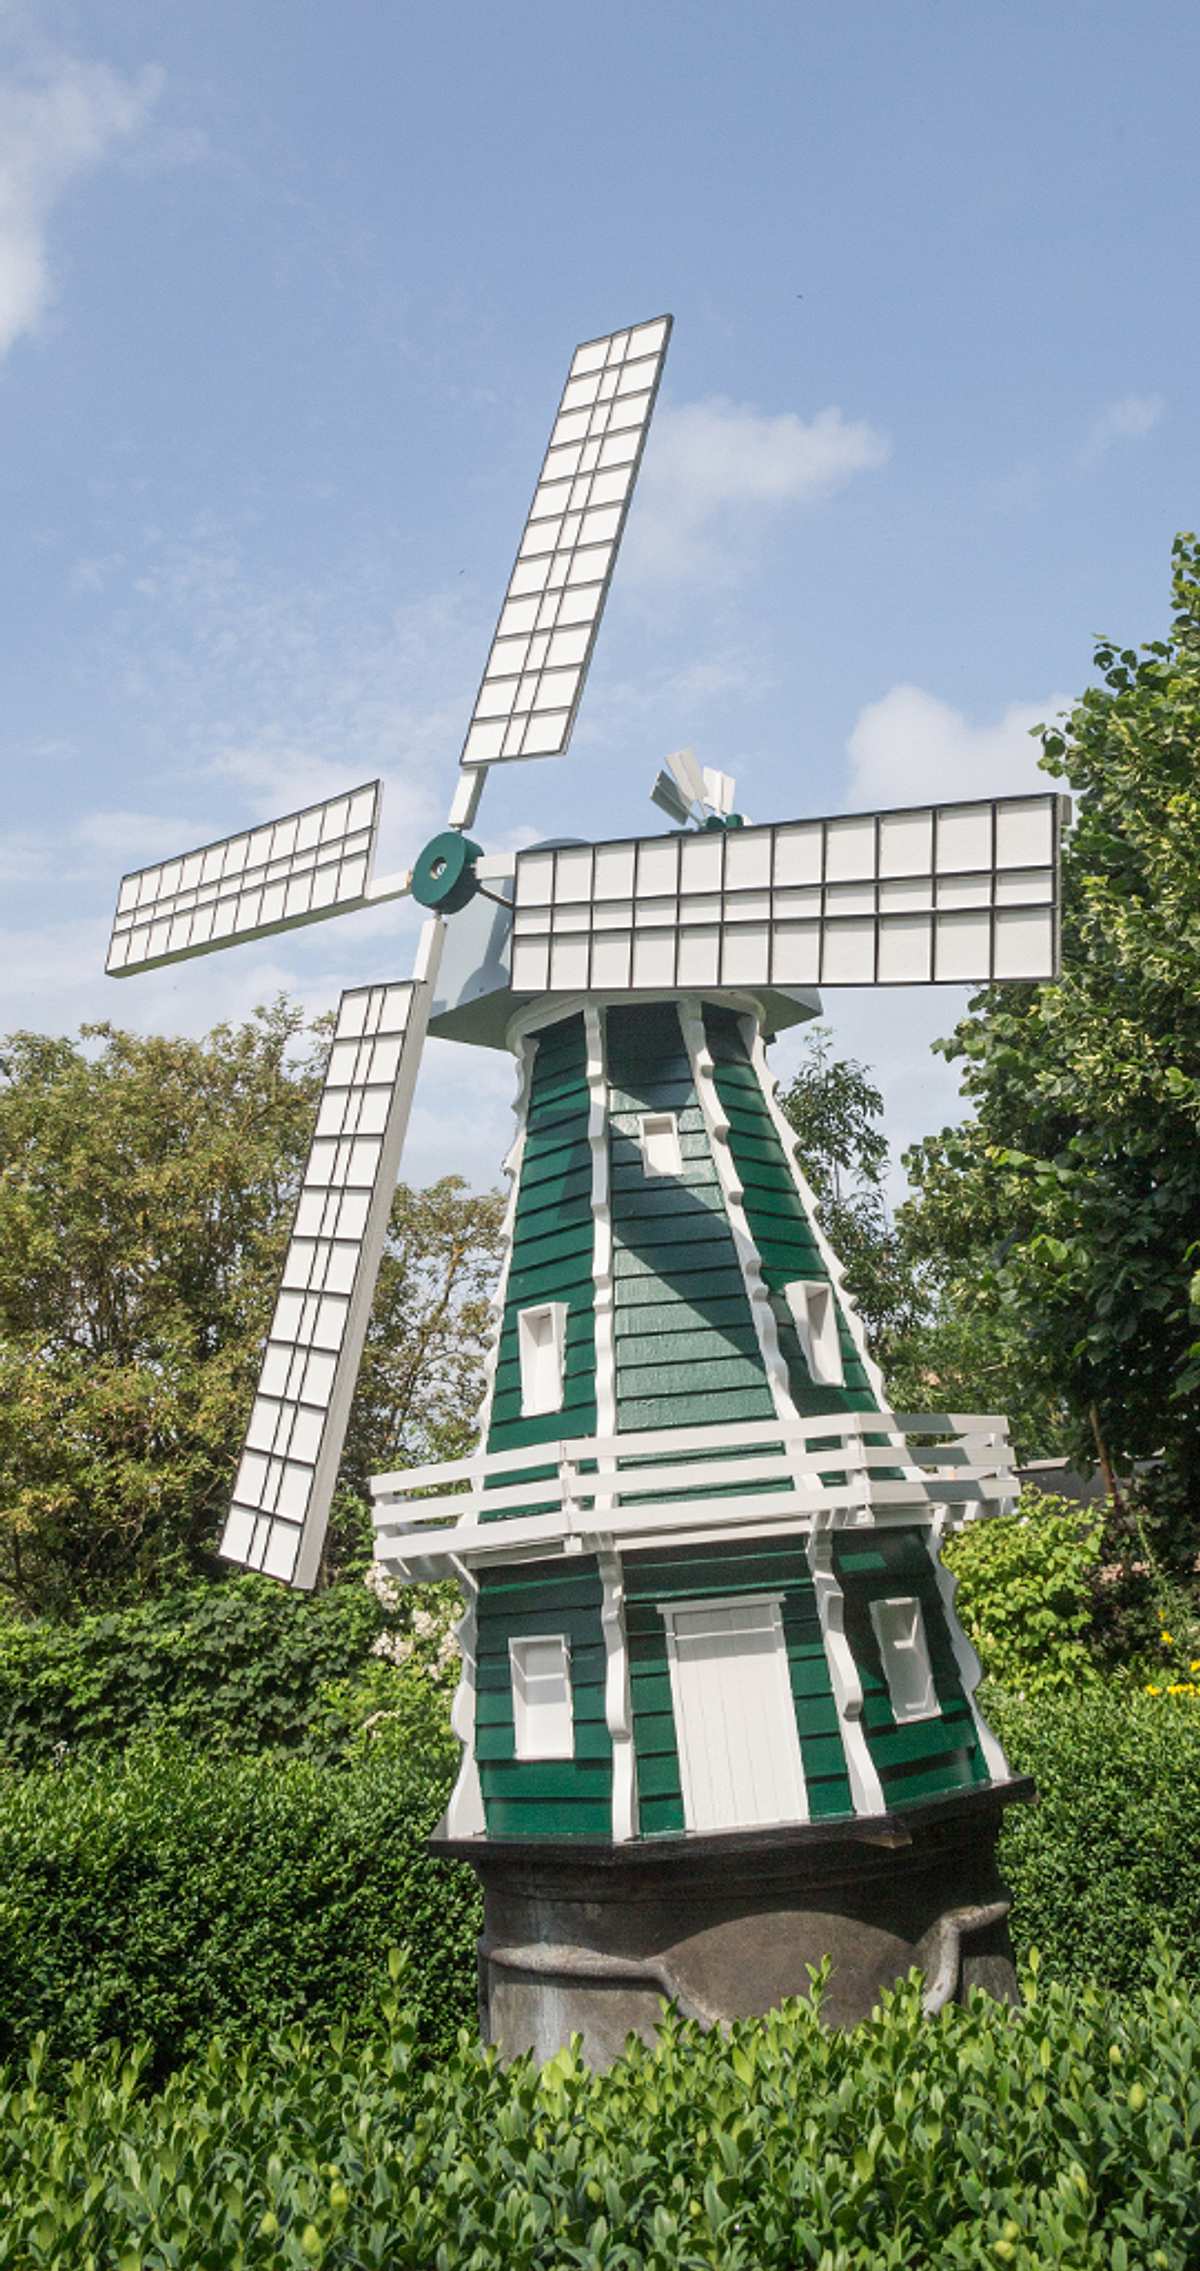 Galerie-Windmühle